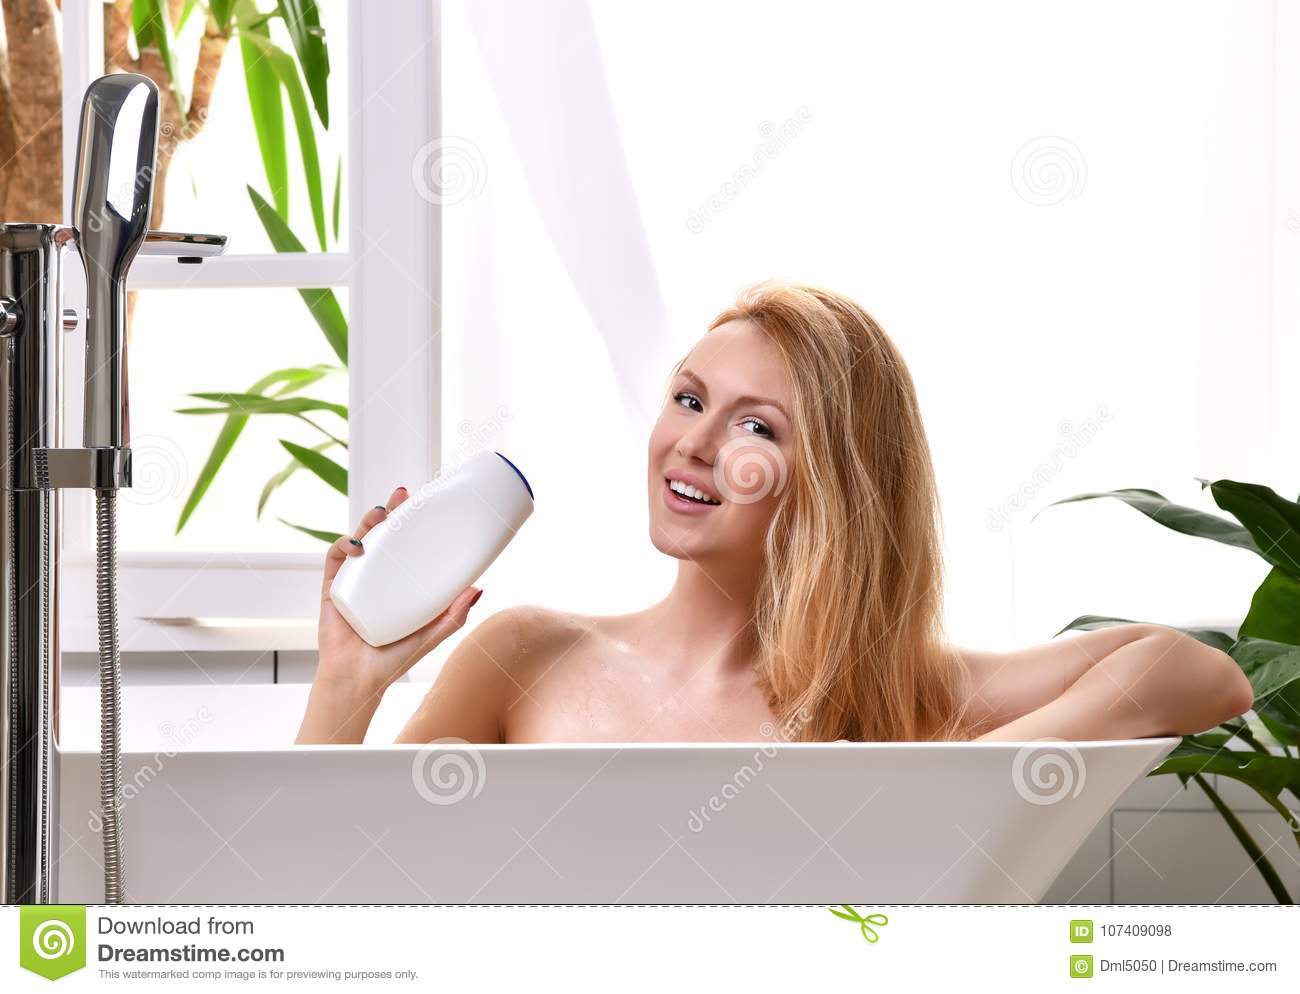 Redhead women in bathtub